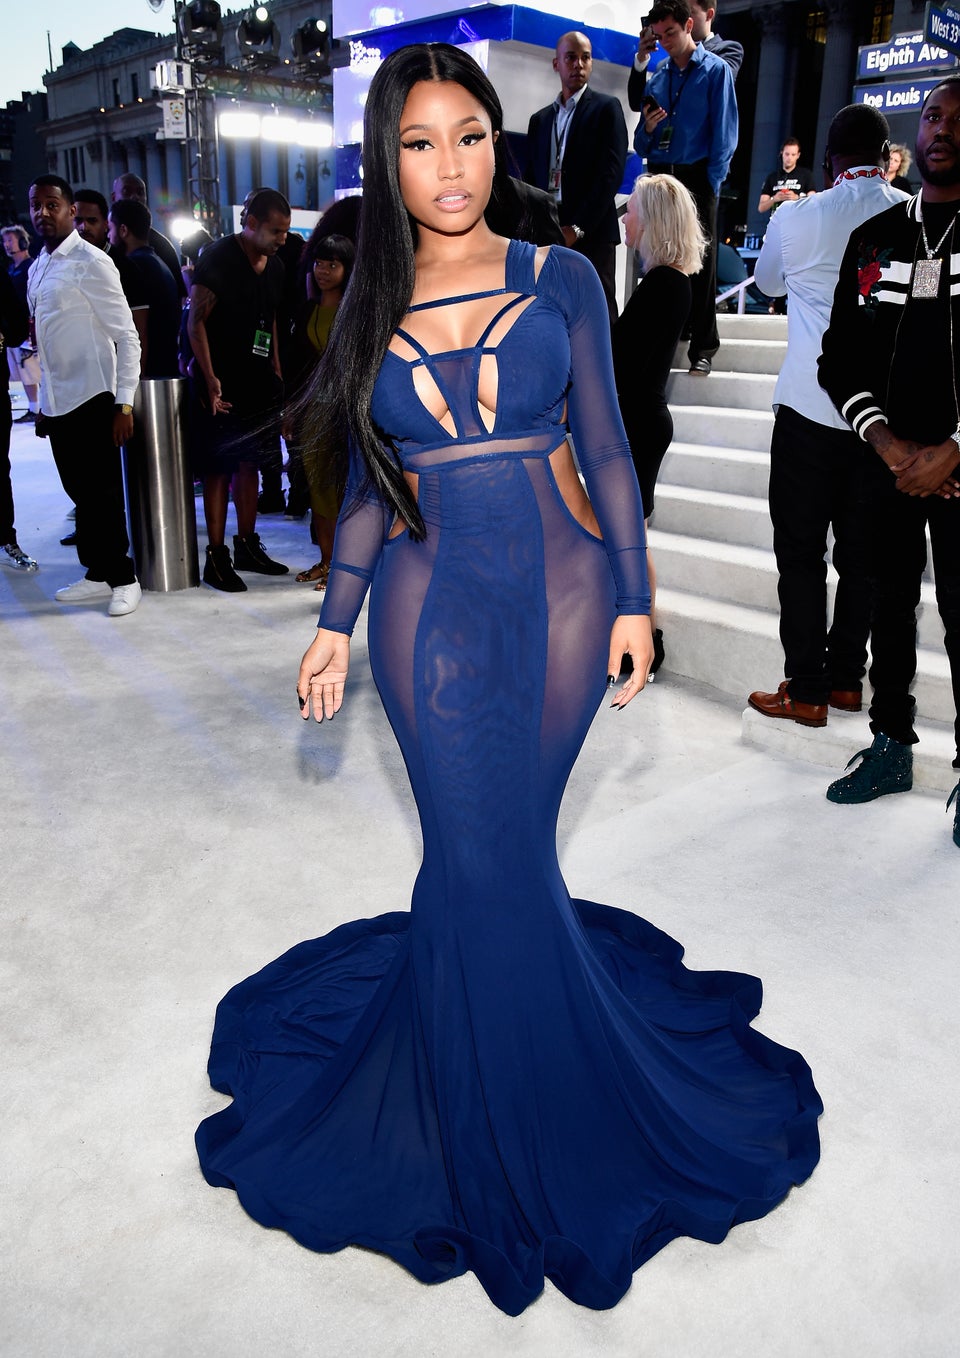 Nicki Minaj Won the VMA Red Carpet in Fab Flowing Navy Gown